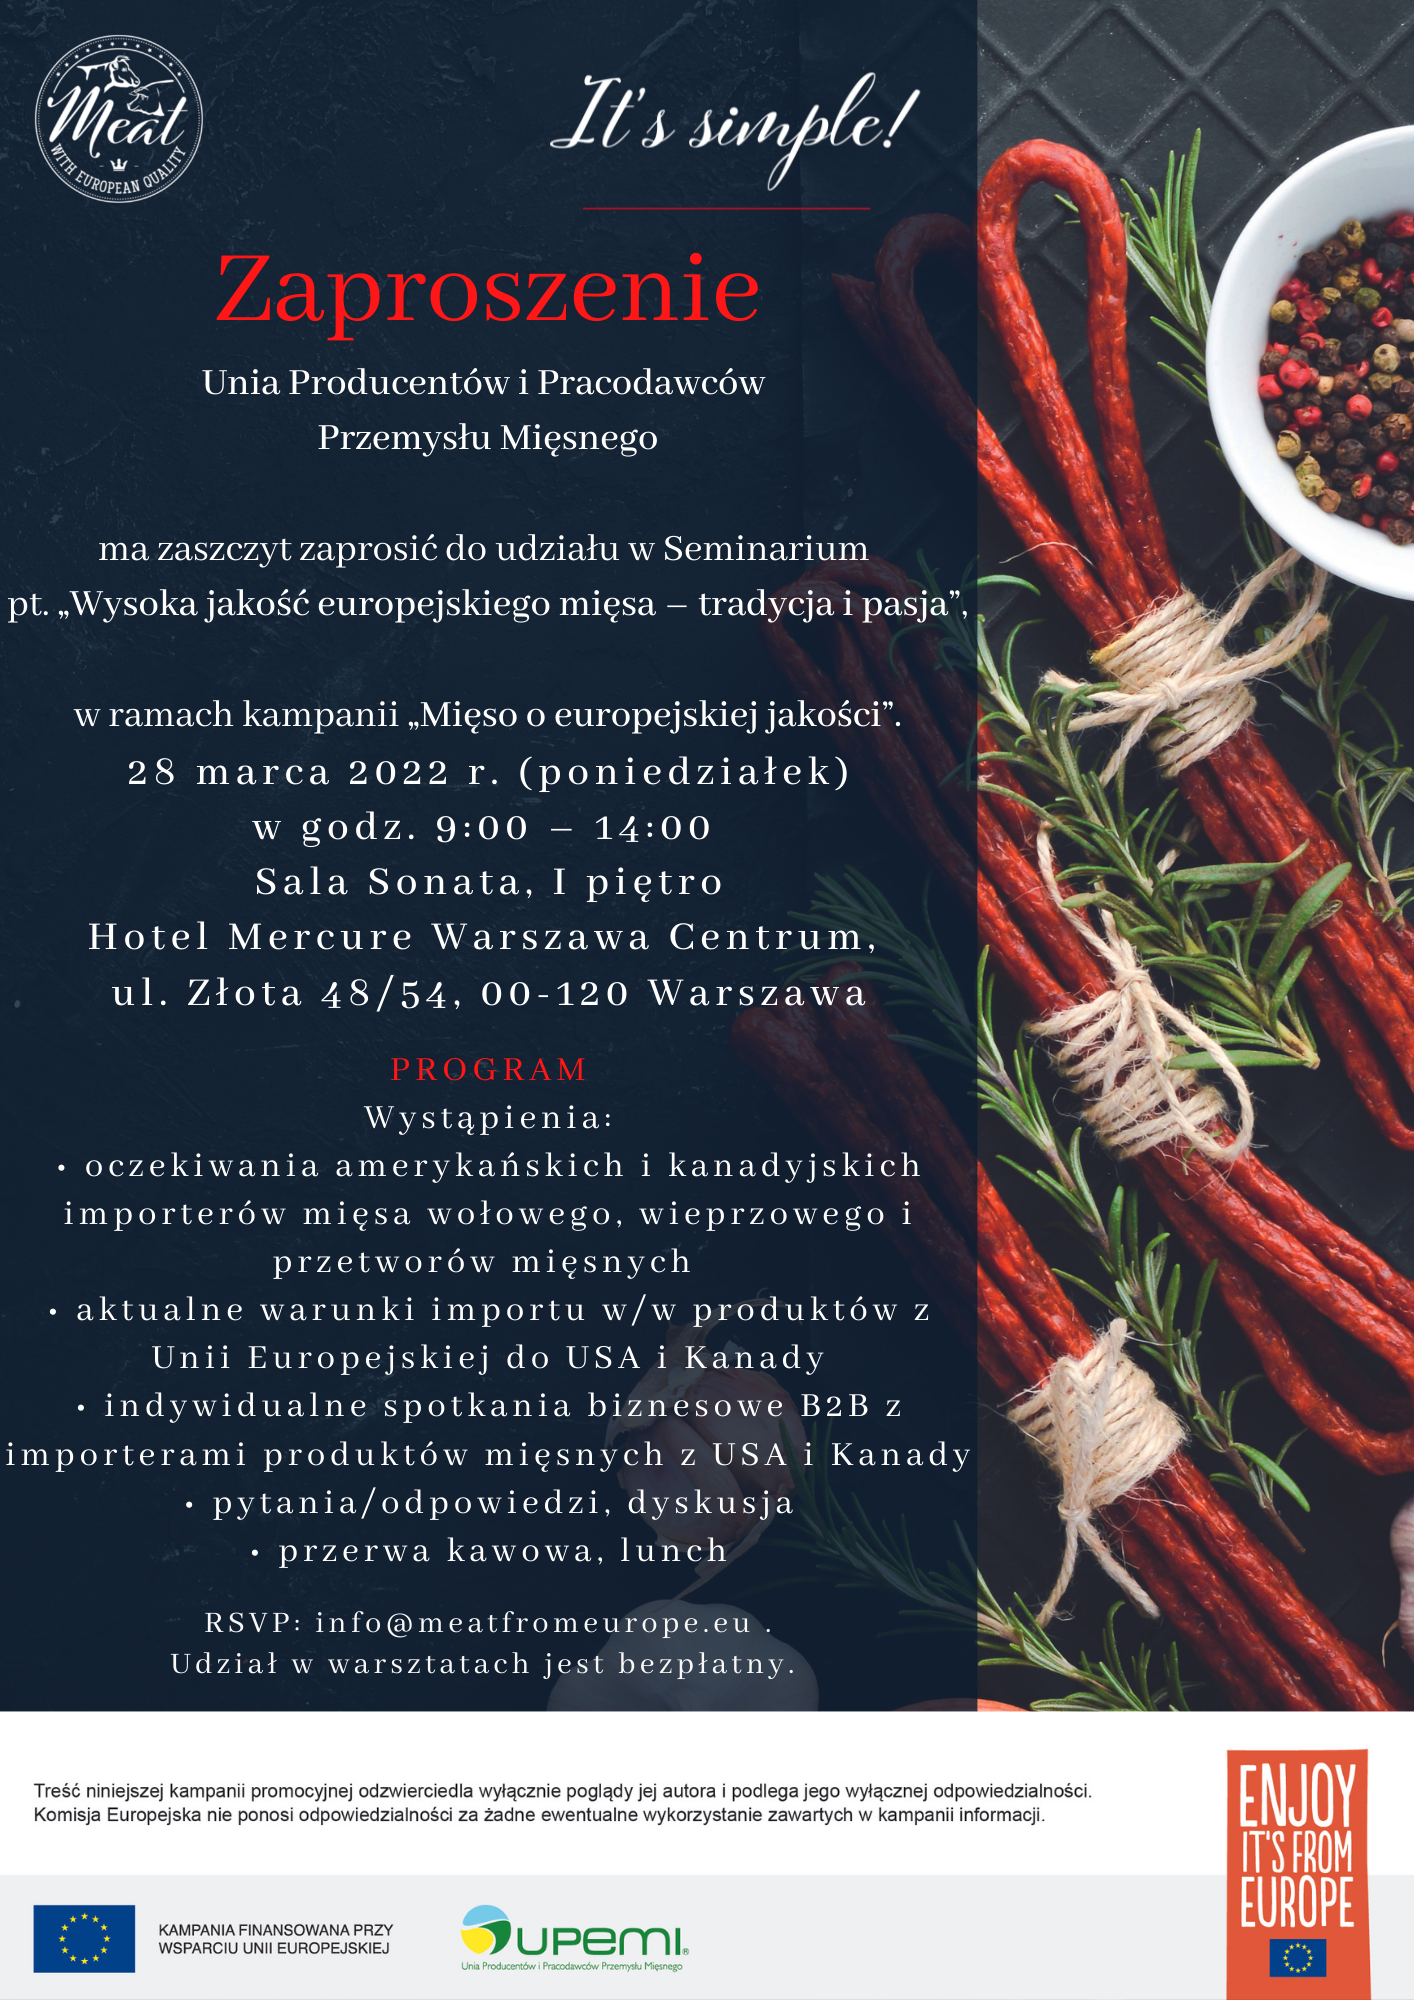 Warszawa, 28 marca 2022 r. zapraszamy na Seminarium pt. „Wysoka jakość europejskiego mięsa – tradycja i pasja”z udziałem importerów mięsa z USA i Kanady